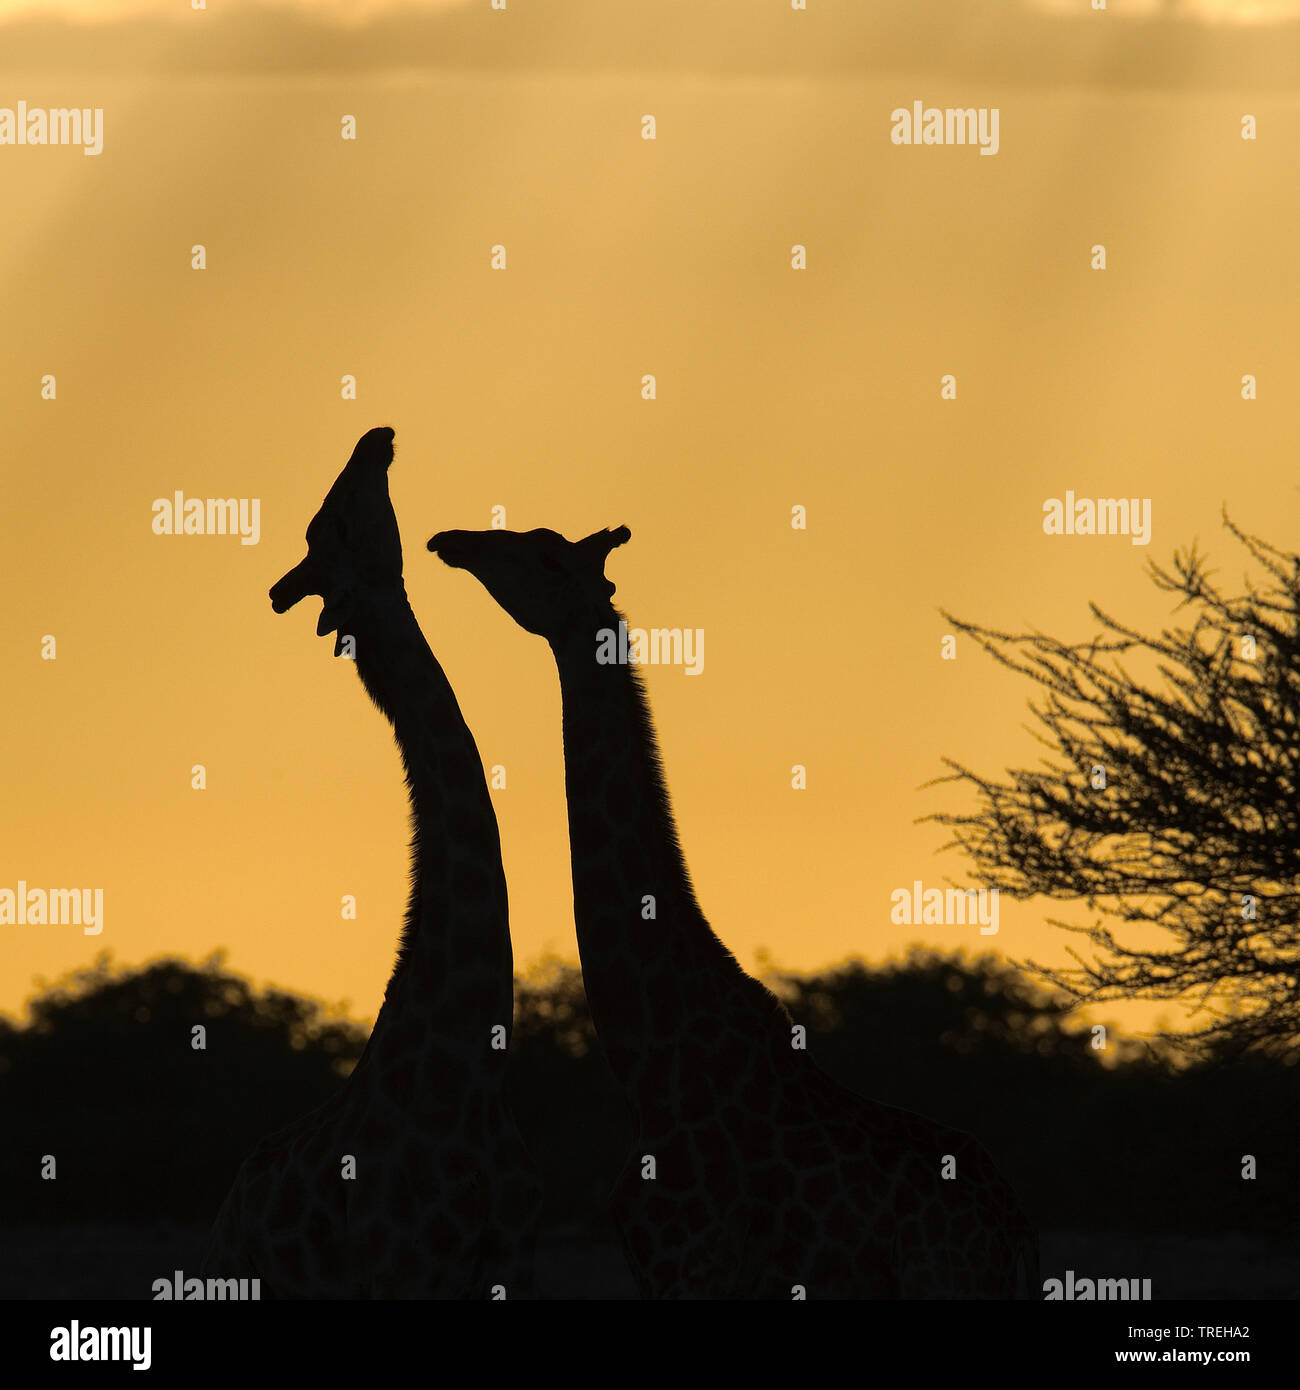 Jirafa angoleña, humeantes jirafa (Giraffa camelopardalis angolensis), dos jirafas en Namibia, retroiluminación Foto de stock